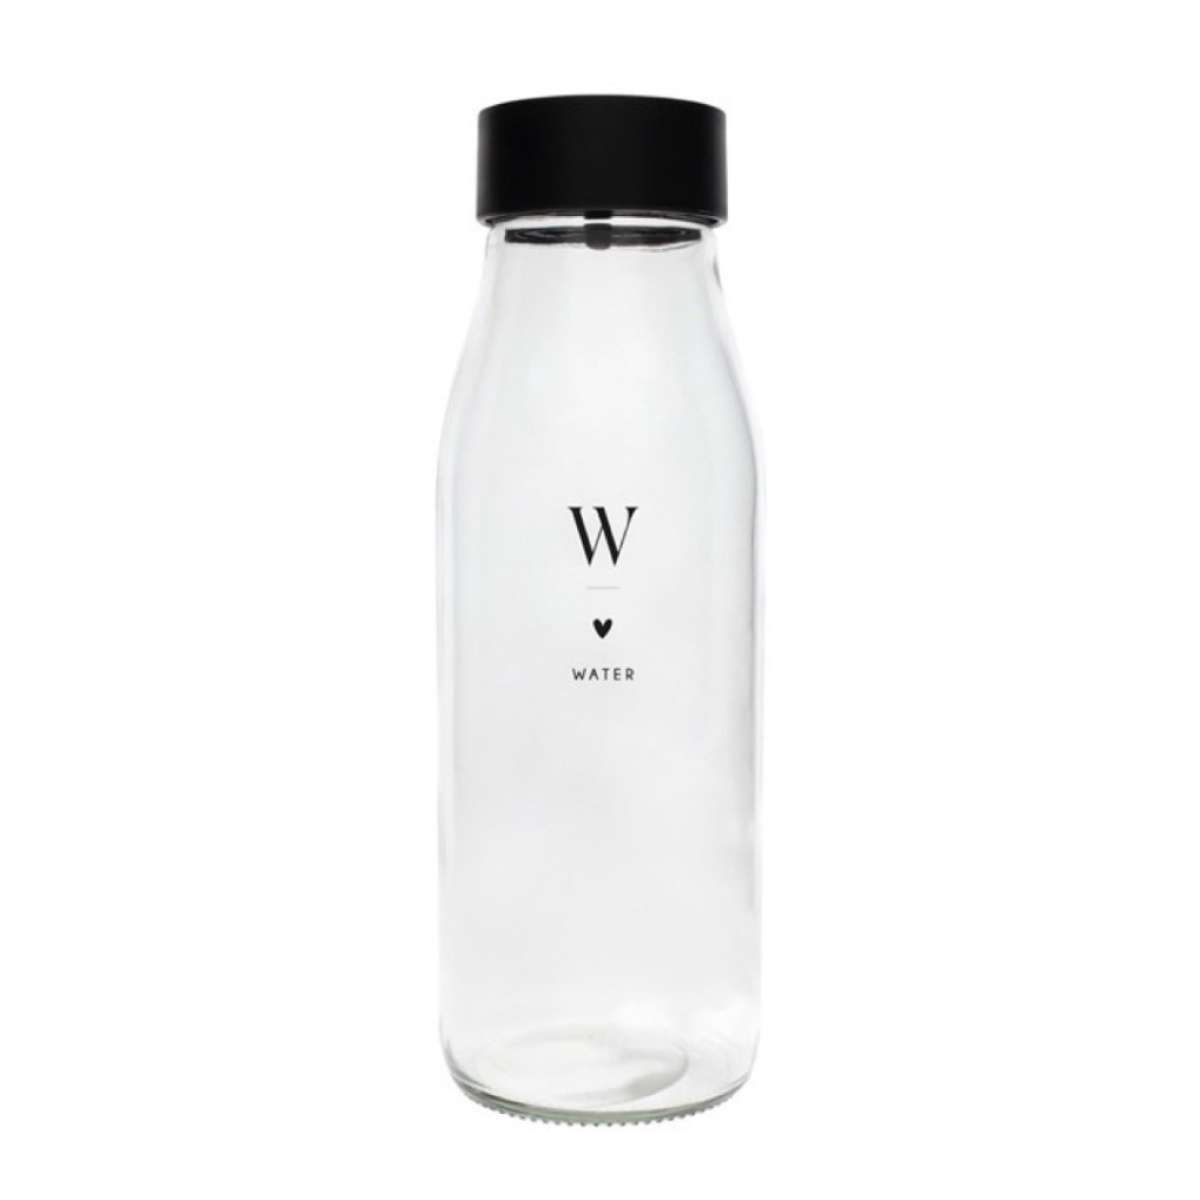 Immagine del prodotto Bottiglia in Vetro Water con Cuoricino | Bastion Collections